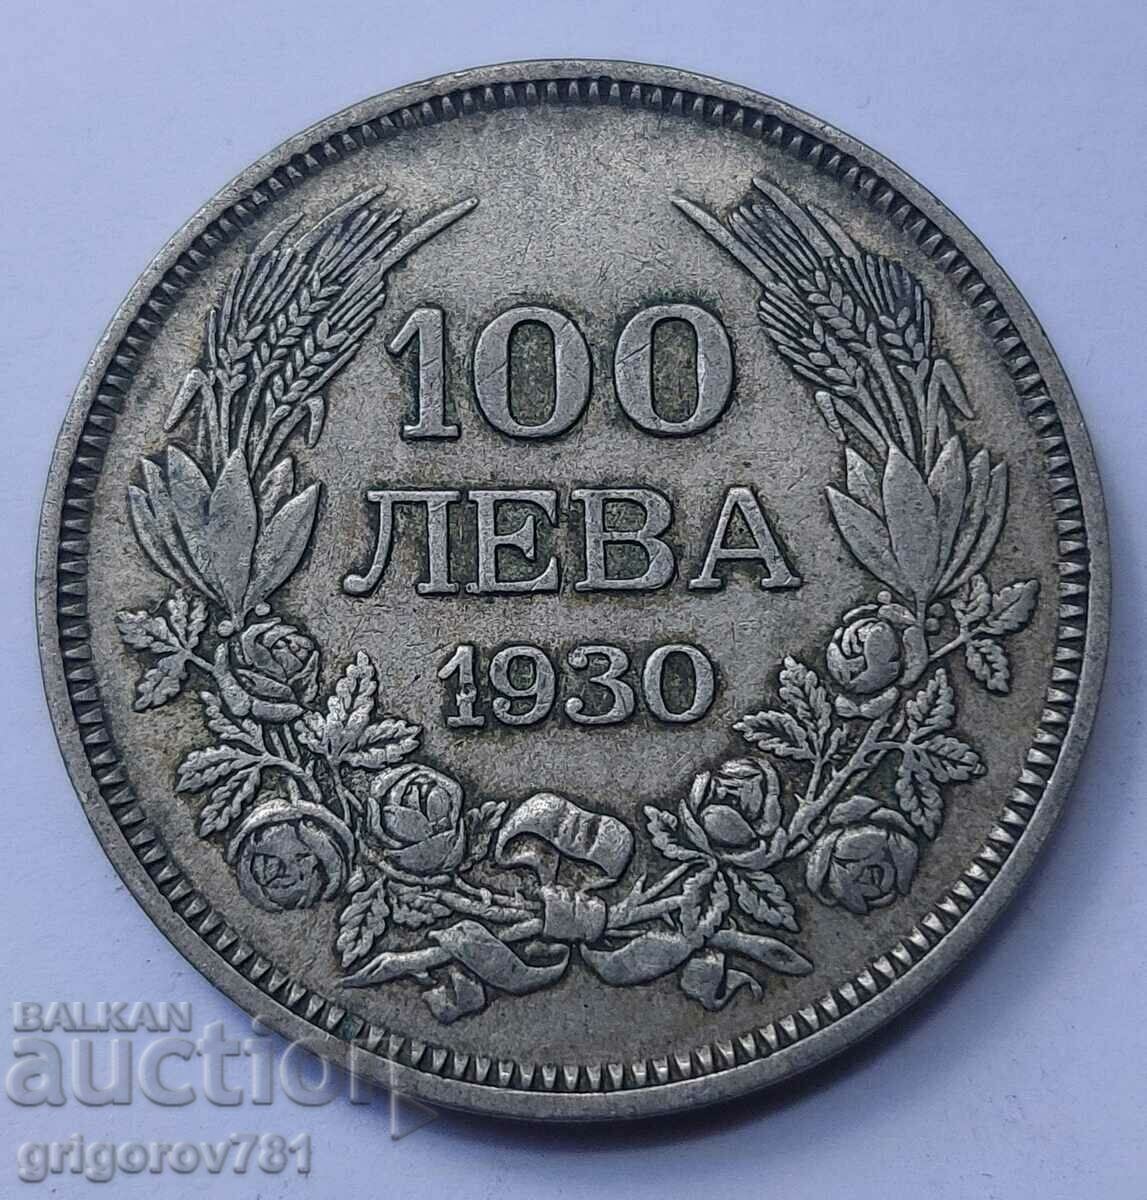 100 leva argint Bulgaria 1930 - monedă de argint #47